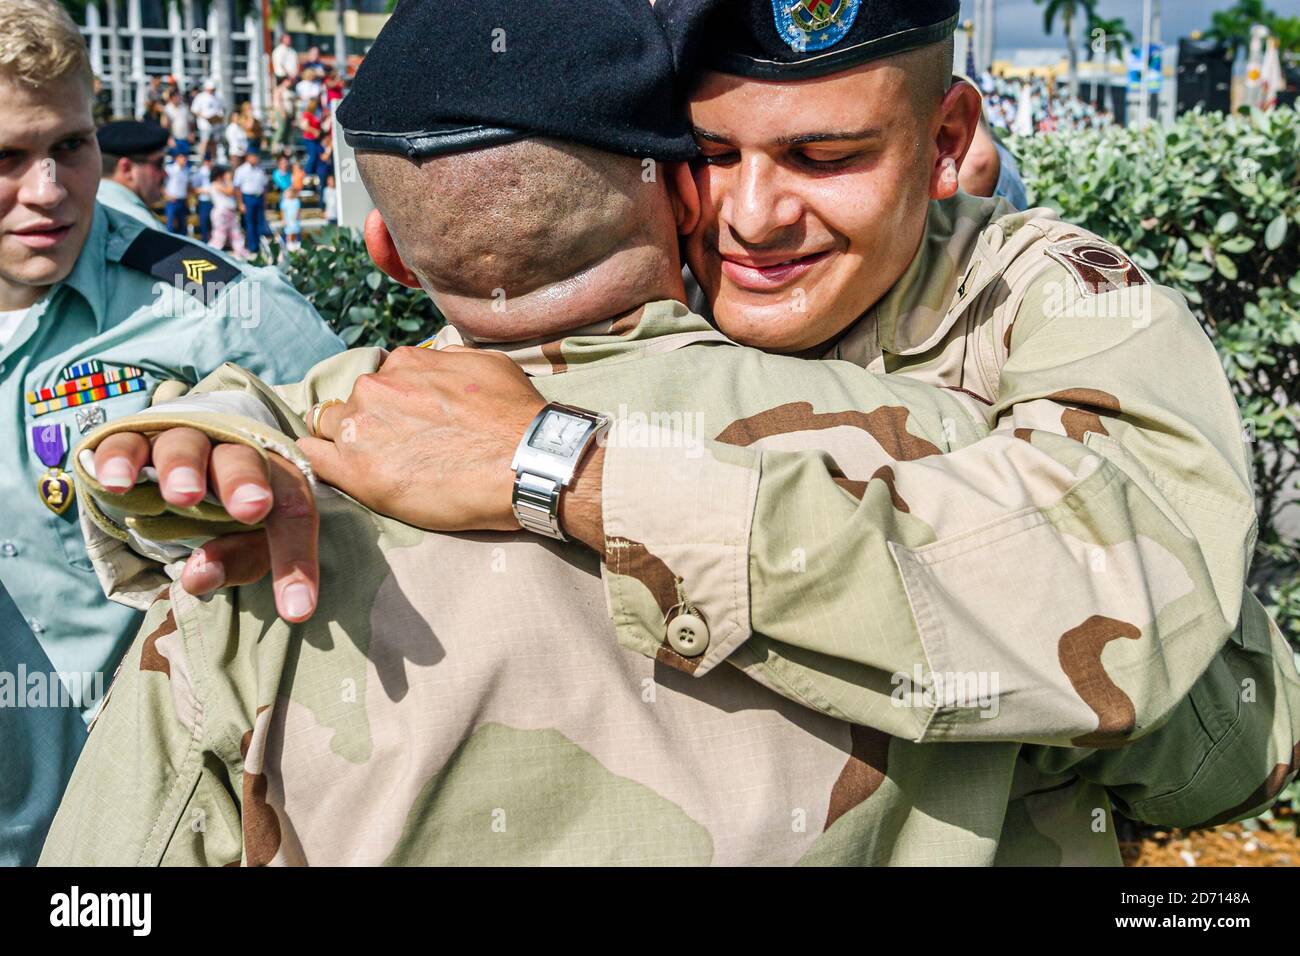 Miami Florida,Biscayne Boulevard Bayfront Park,Veterans Day Parade Ceremonies,soldats embrassant hommes homme uniforme hommes uniformes Irak anciens combattants, Banque D'Images